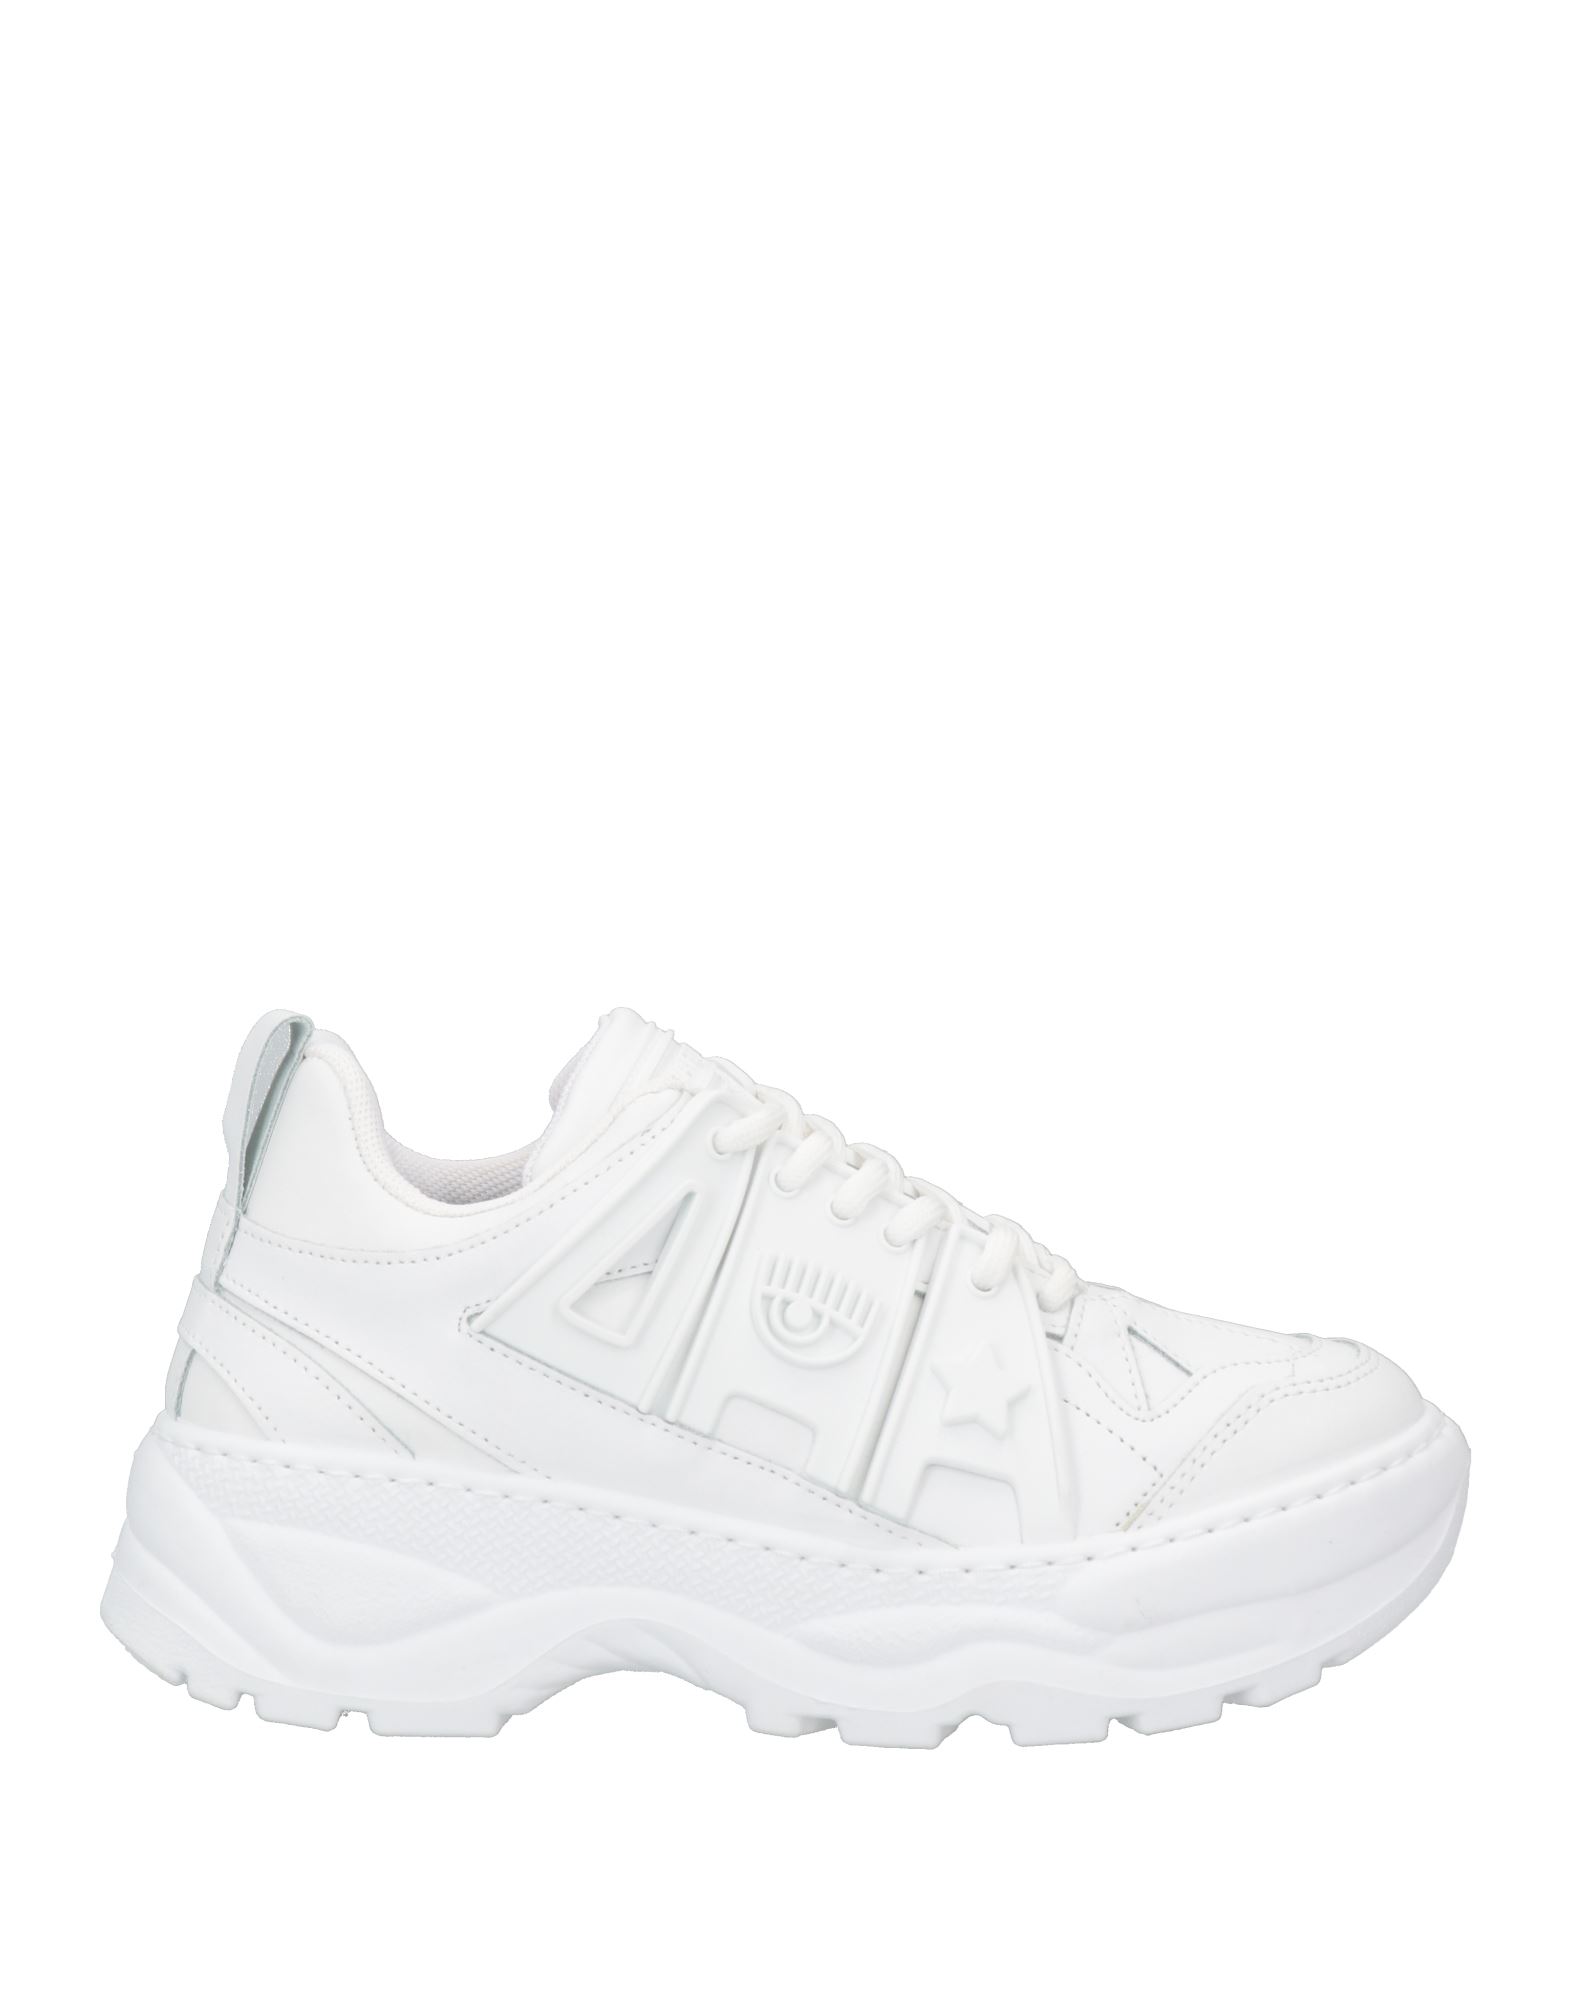 Chiara Ferragni Sneakers In White